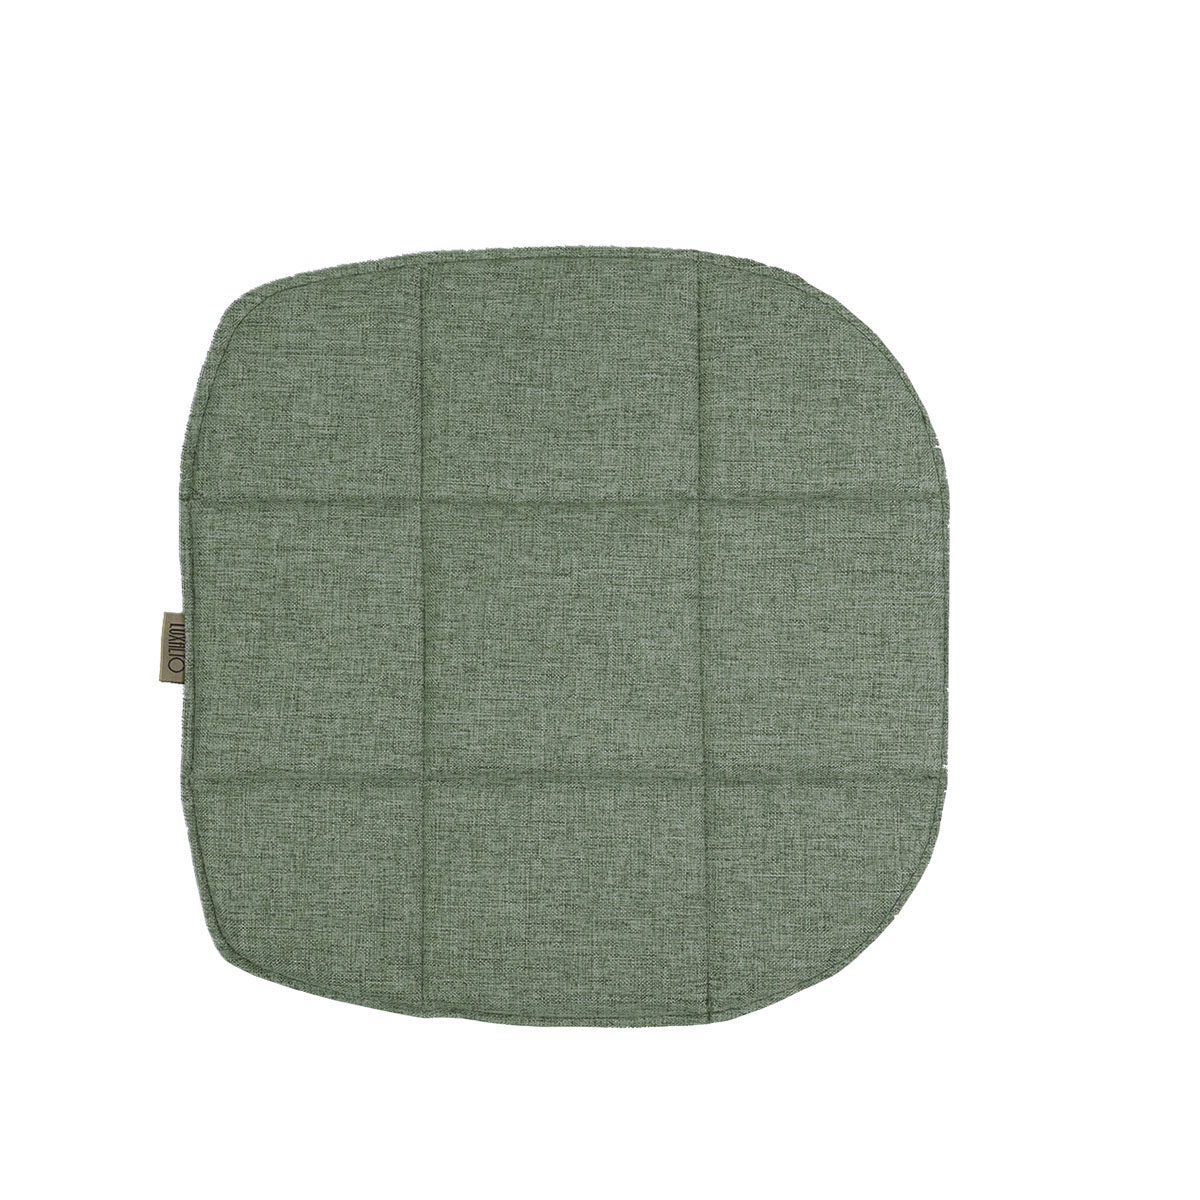 Подушка на стул LuxAlto для модели Eames/Aspen, рогожка зеленый (Laguna 693), 2 шт.